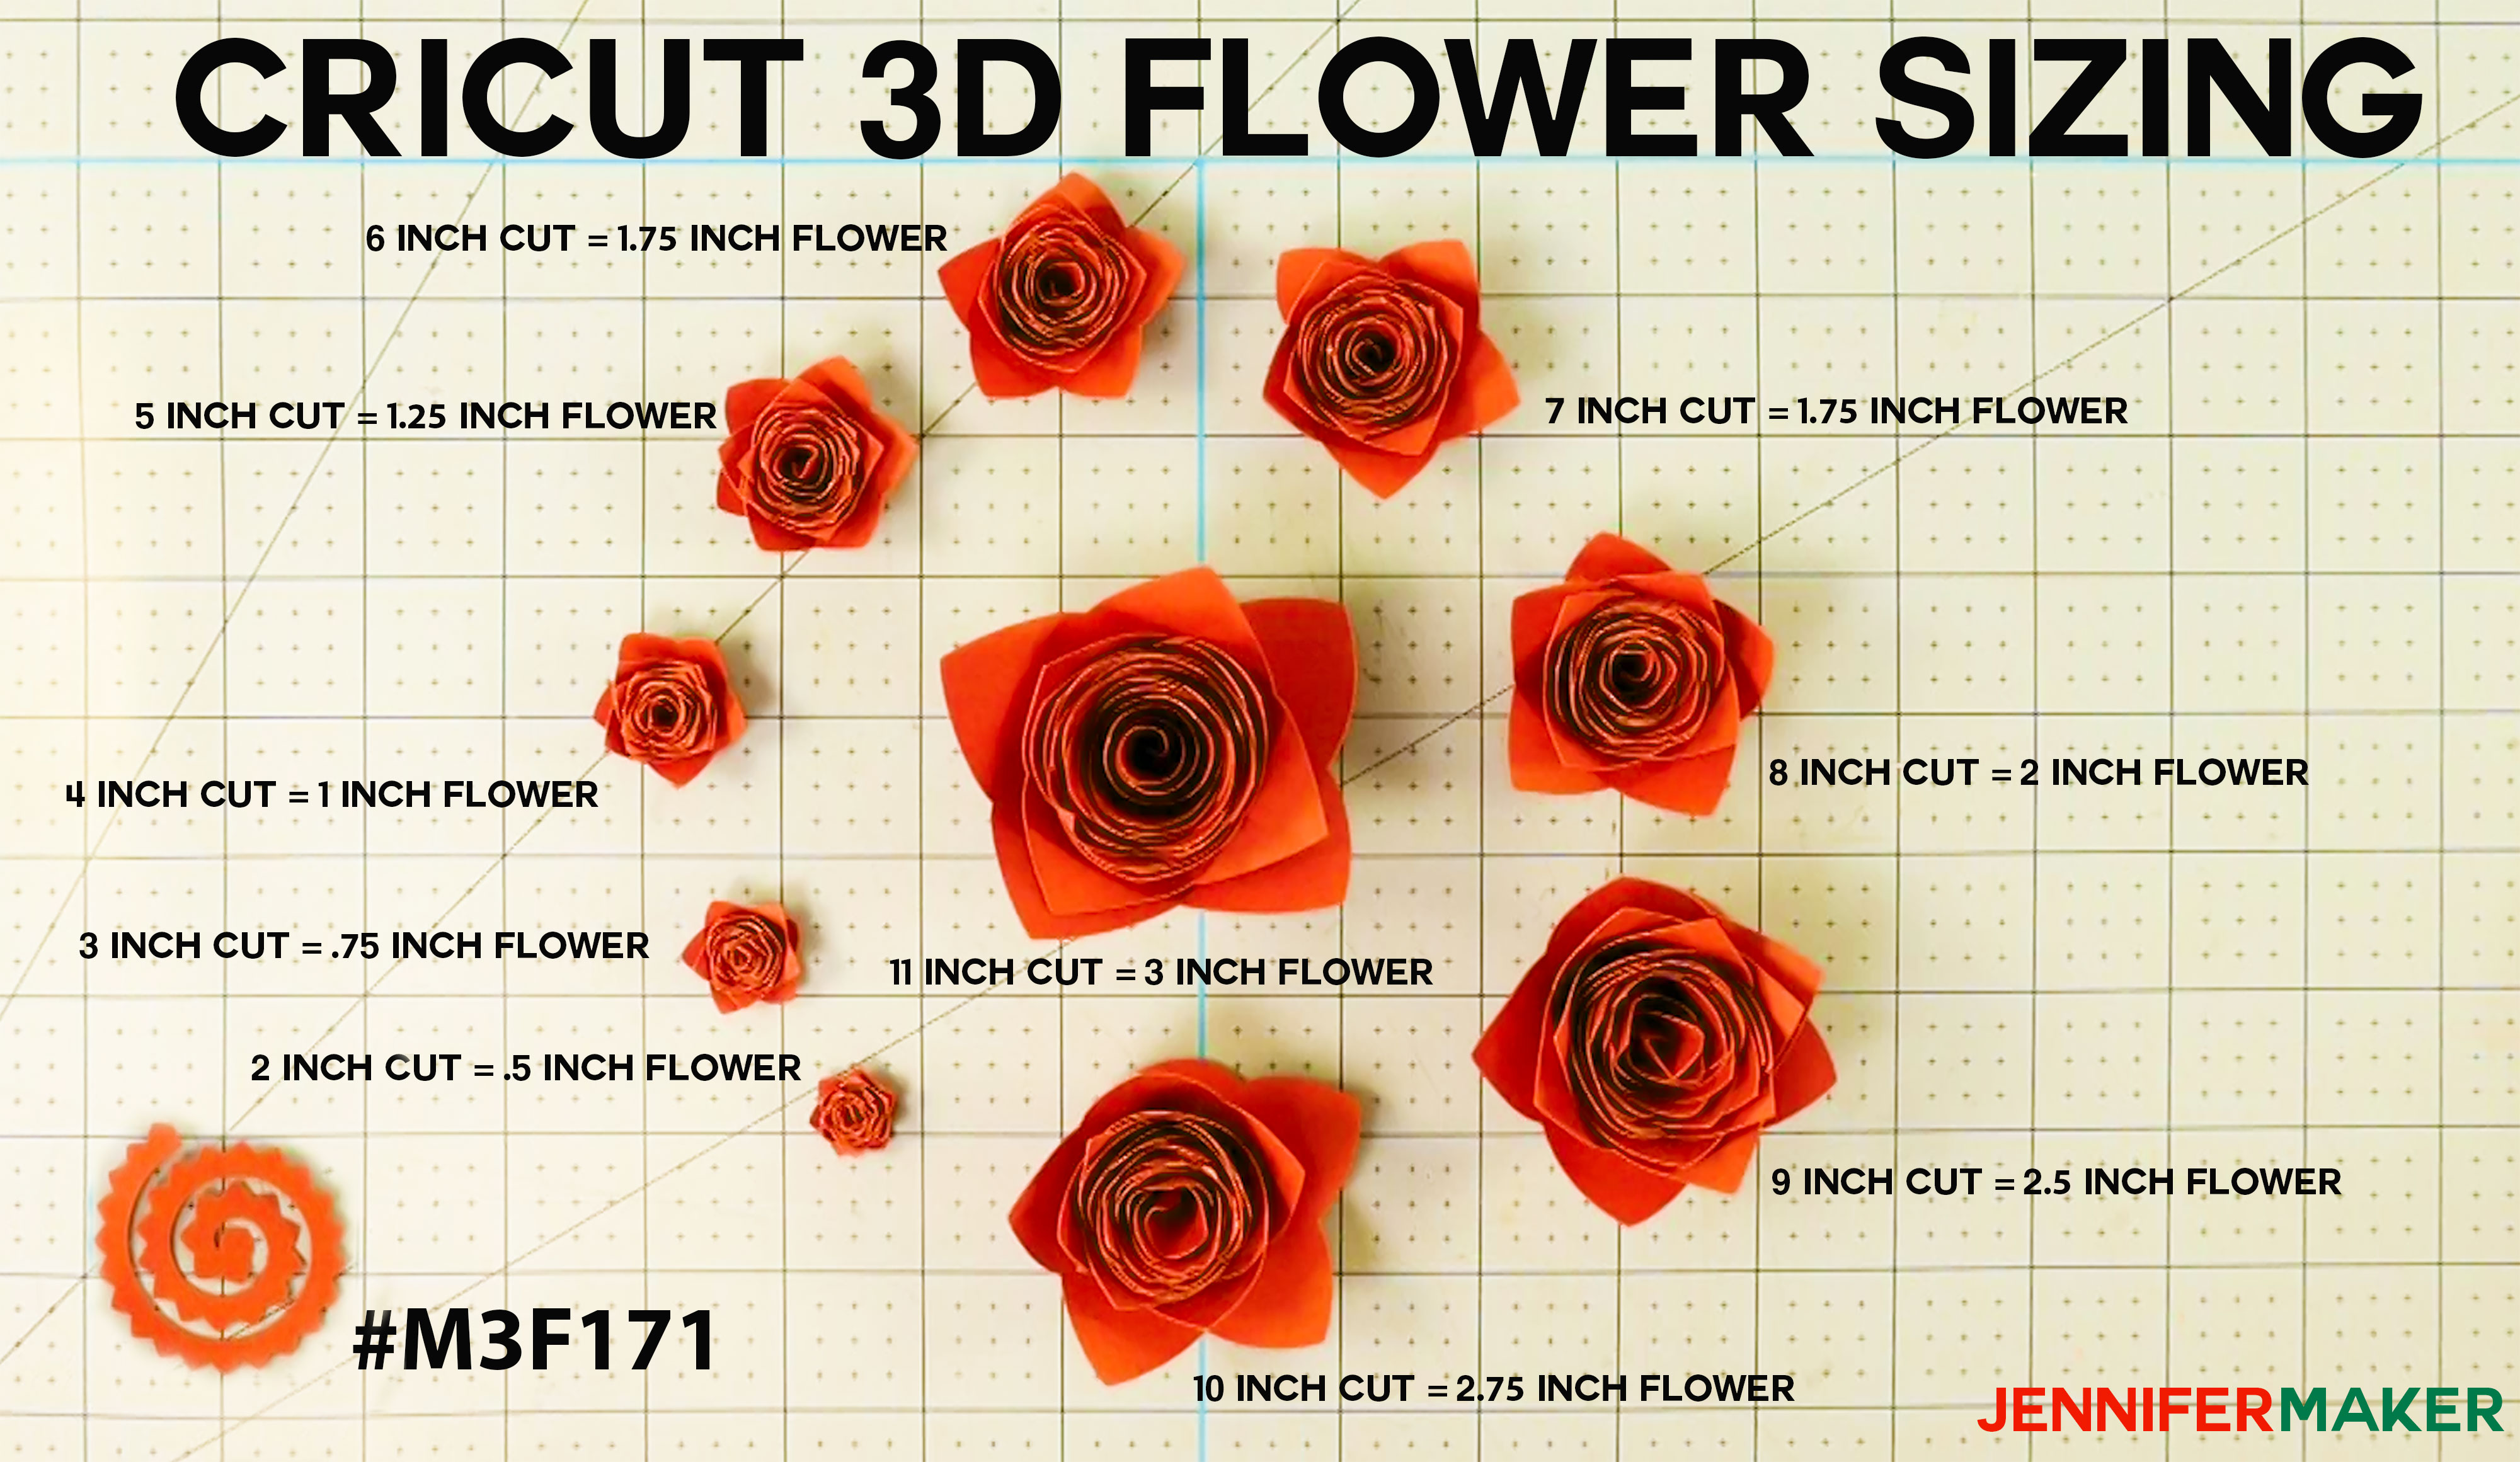 Make a DIY Paper Flower Bouquet - with 3D Flowers! - Jennifer Maker